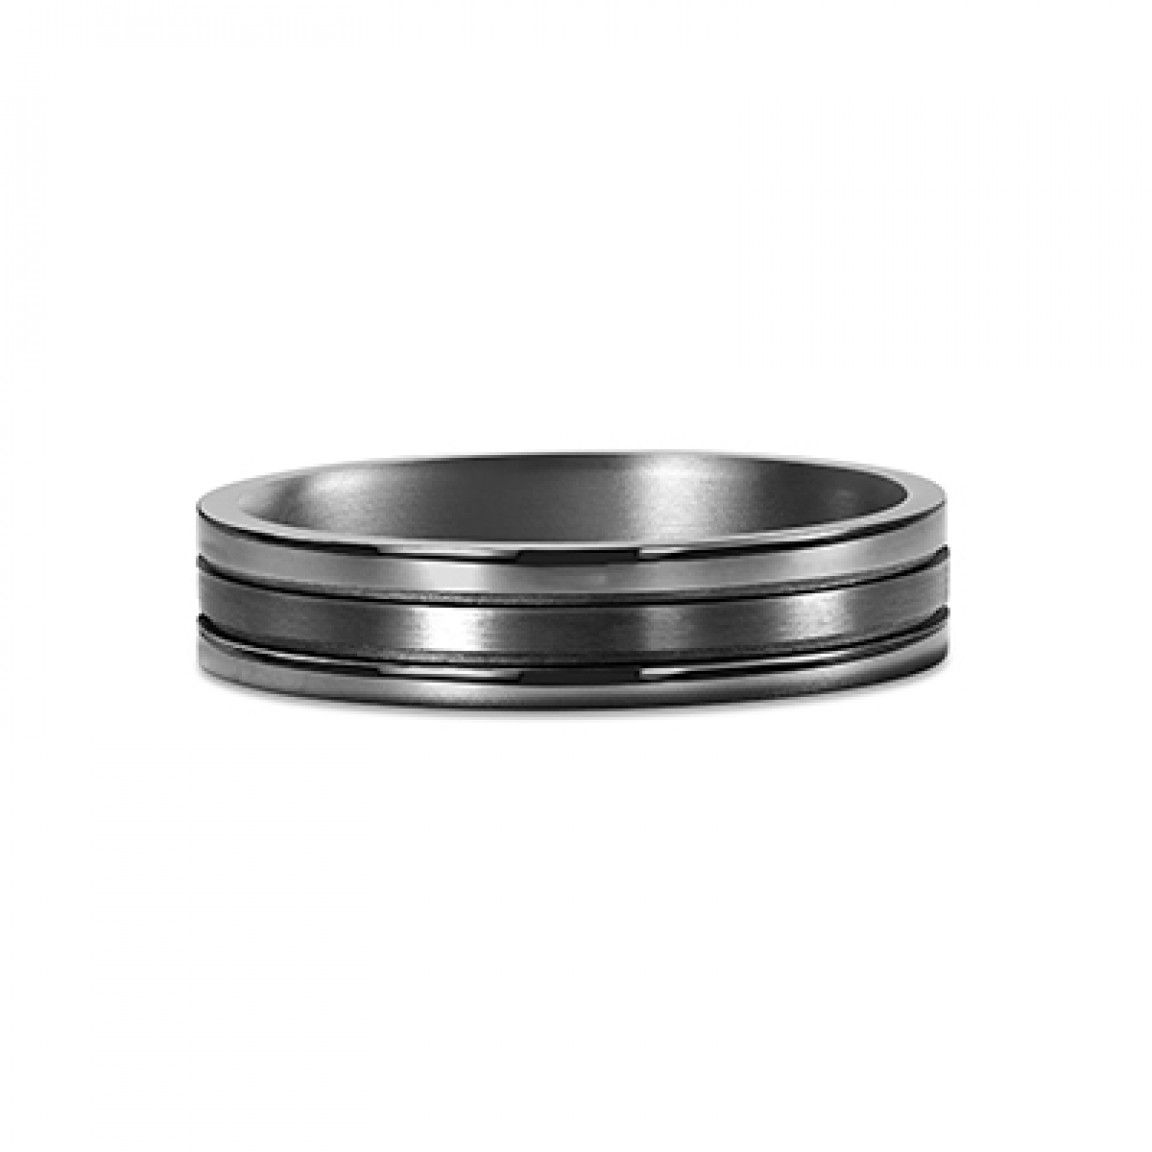 Ceramic 06.00 Ridged Band Ring Size 6